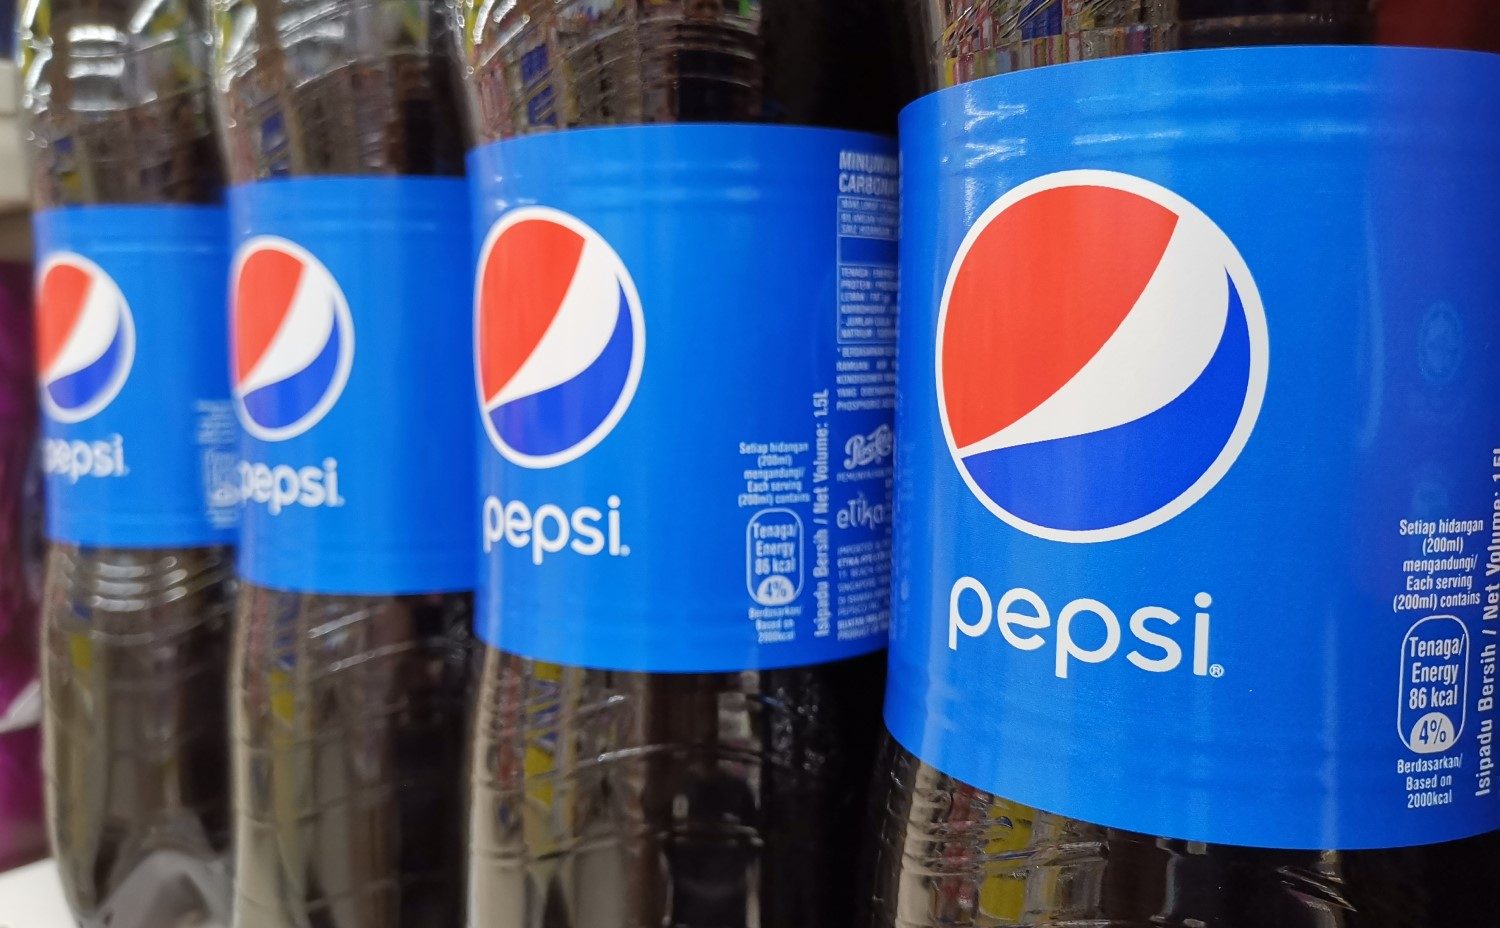 Thử nghiệm Blockchain của Pepsi cho kết quả cải thiện 28% hiệu quả chuỗi cung ứng